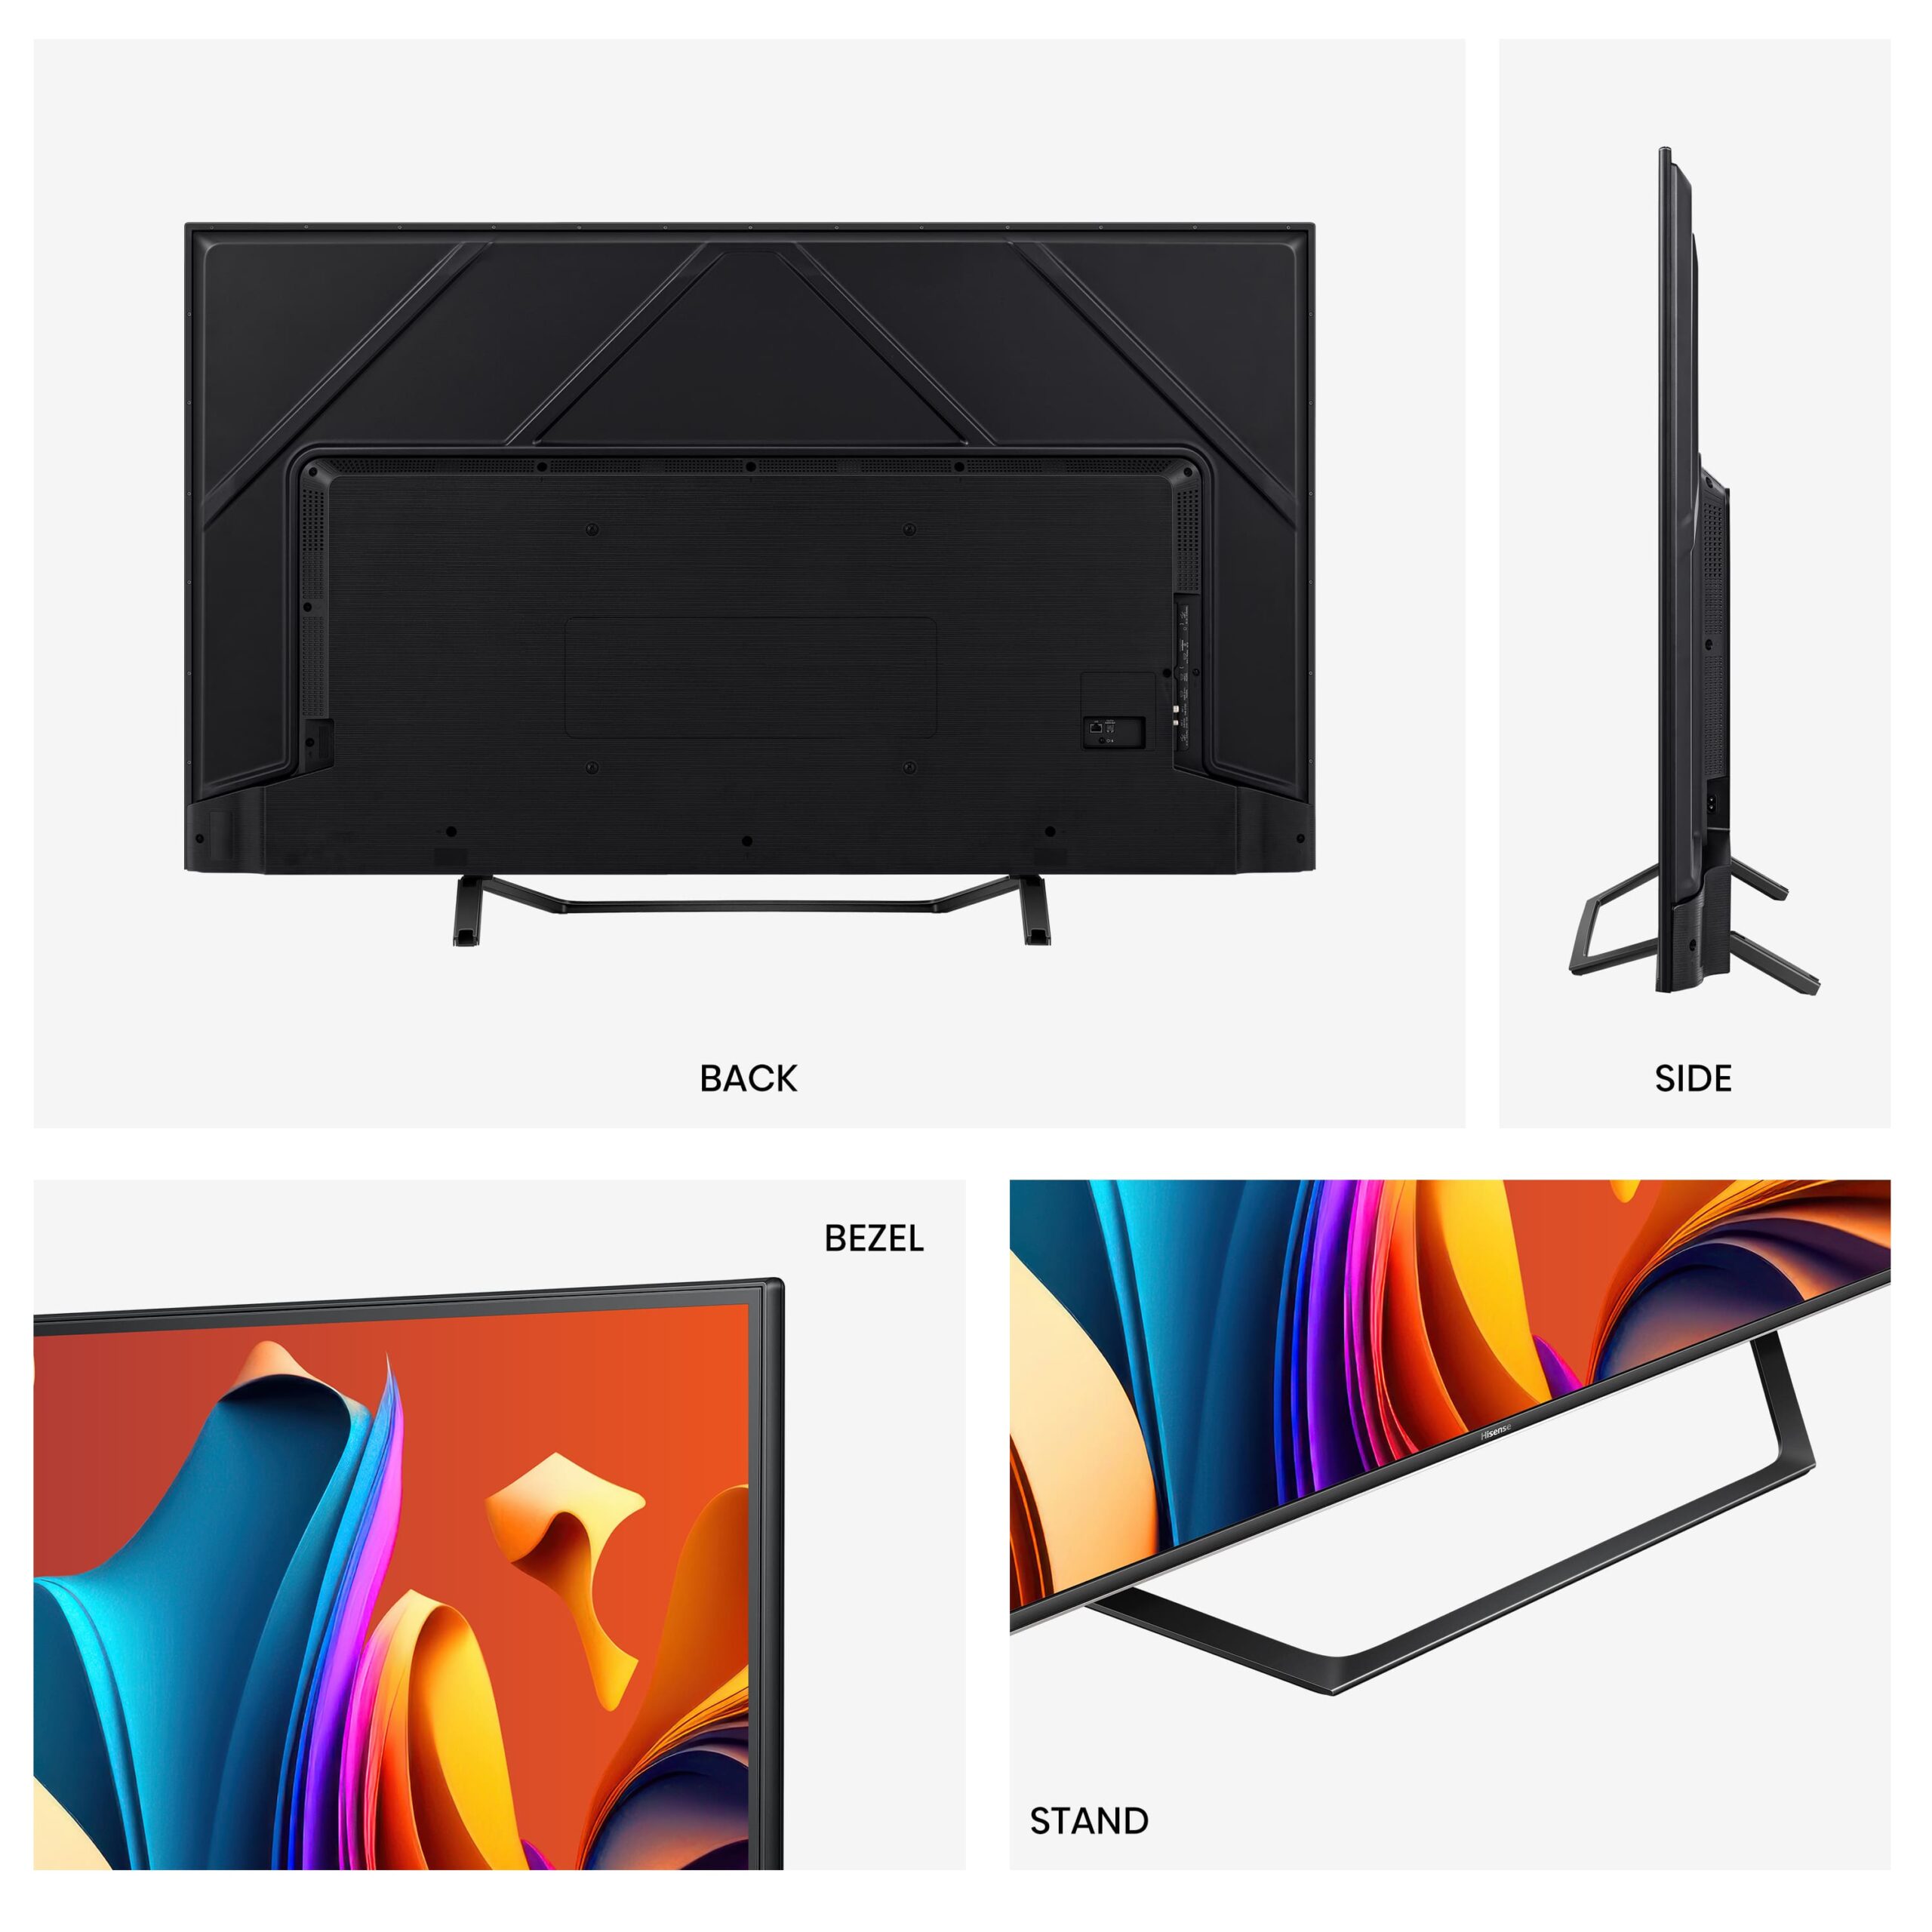 Hisense - QLED TV 50A7NQ Smart TV, Quantum Dot Colour, Dolby Vision & Atmos, Alexa Built in & VIDAA Voice